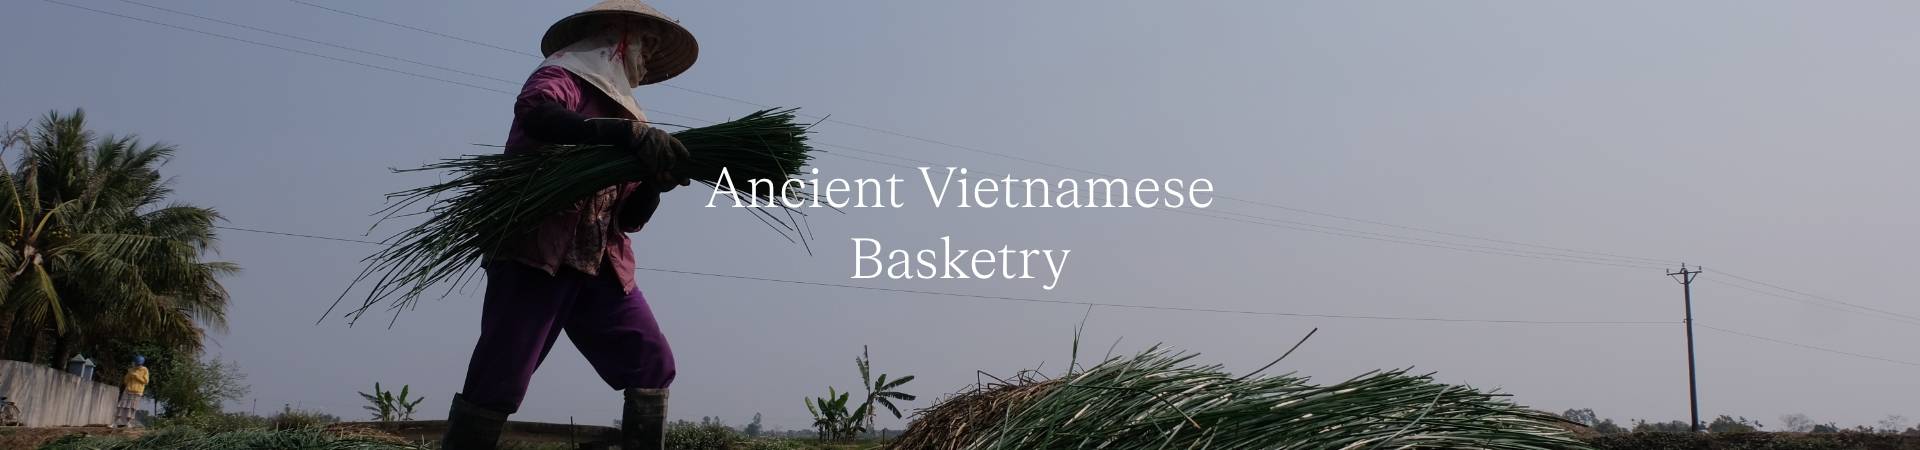 Ancient Vietnamese Basketry.jpg